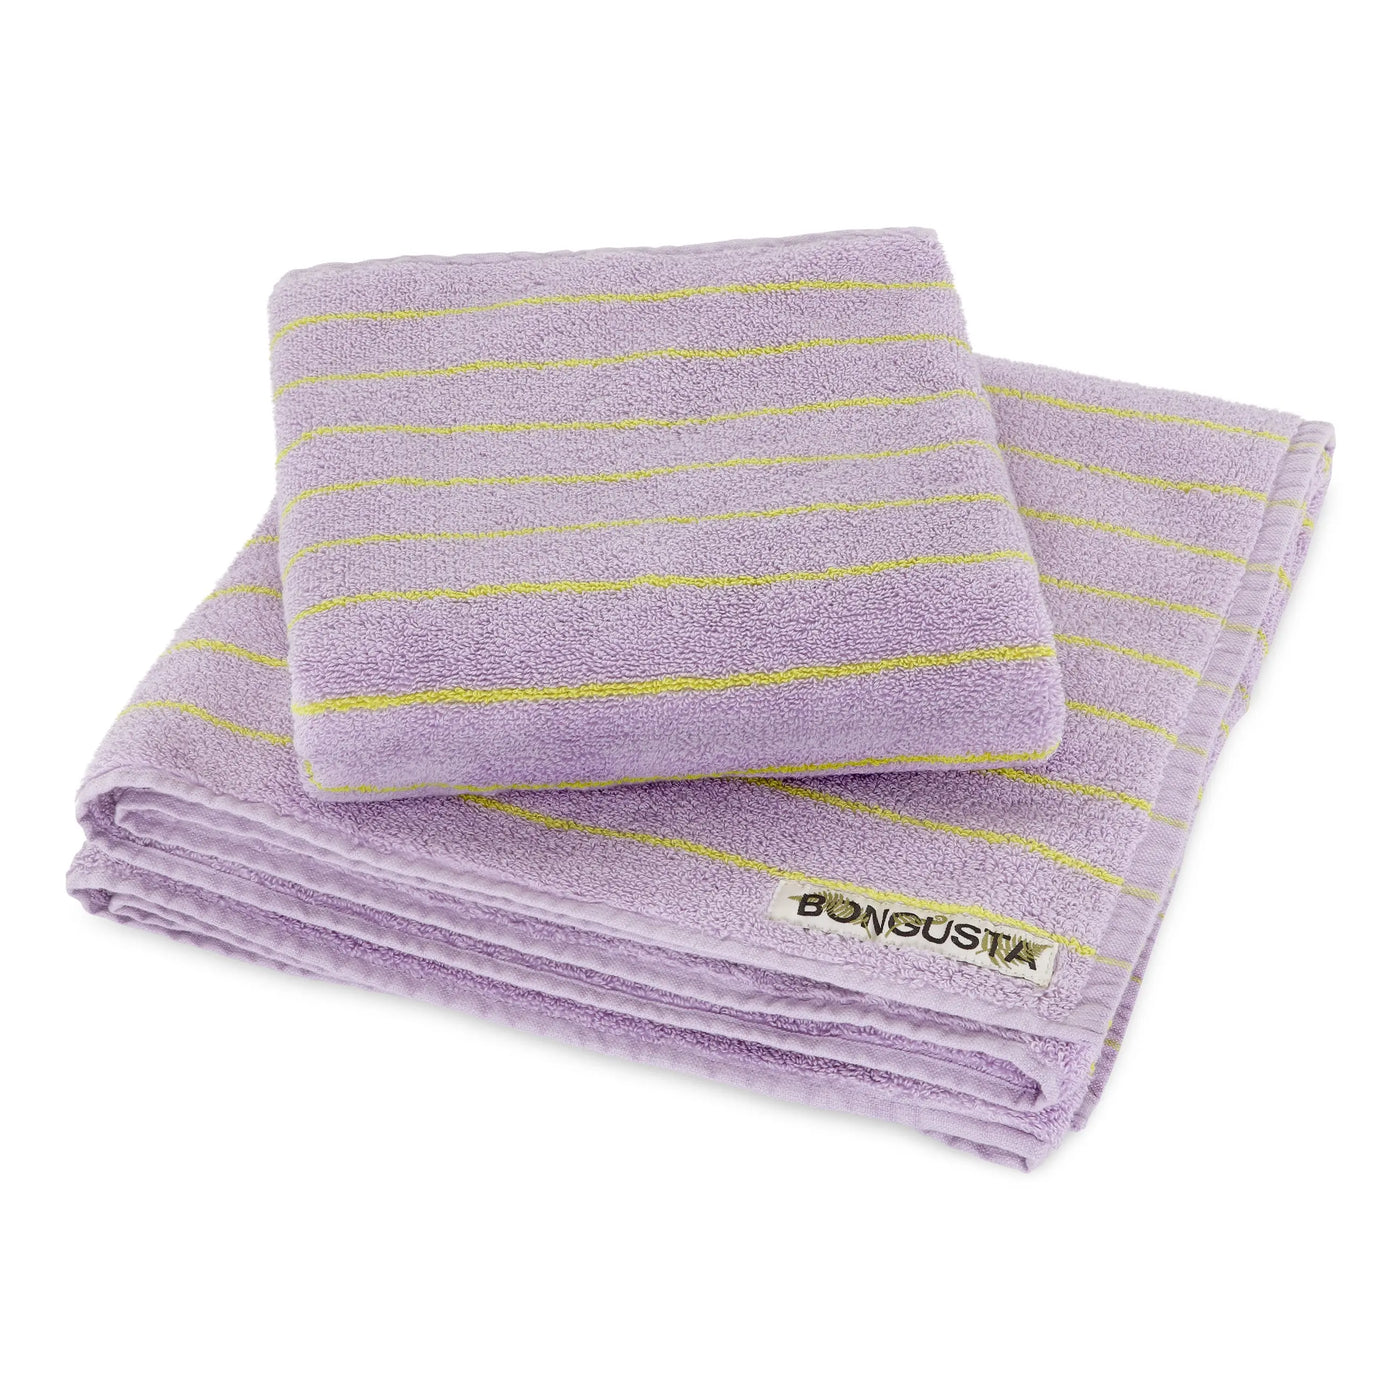 Bongusta Naram håndklæde | Lilac & neon yellow (thin stripe) - 2 størrelser Bongusta